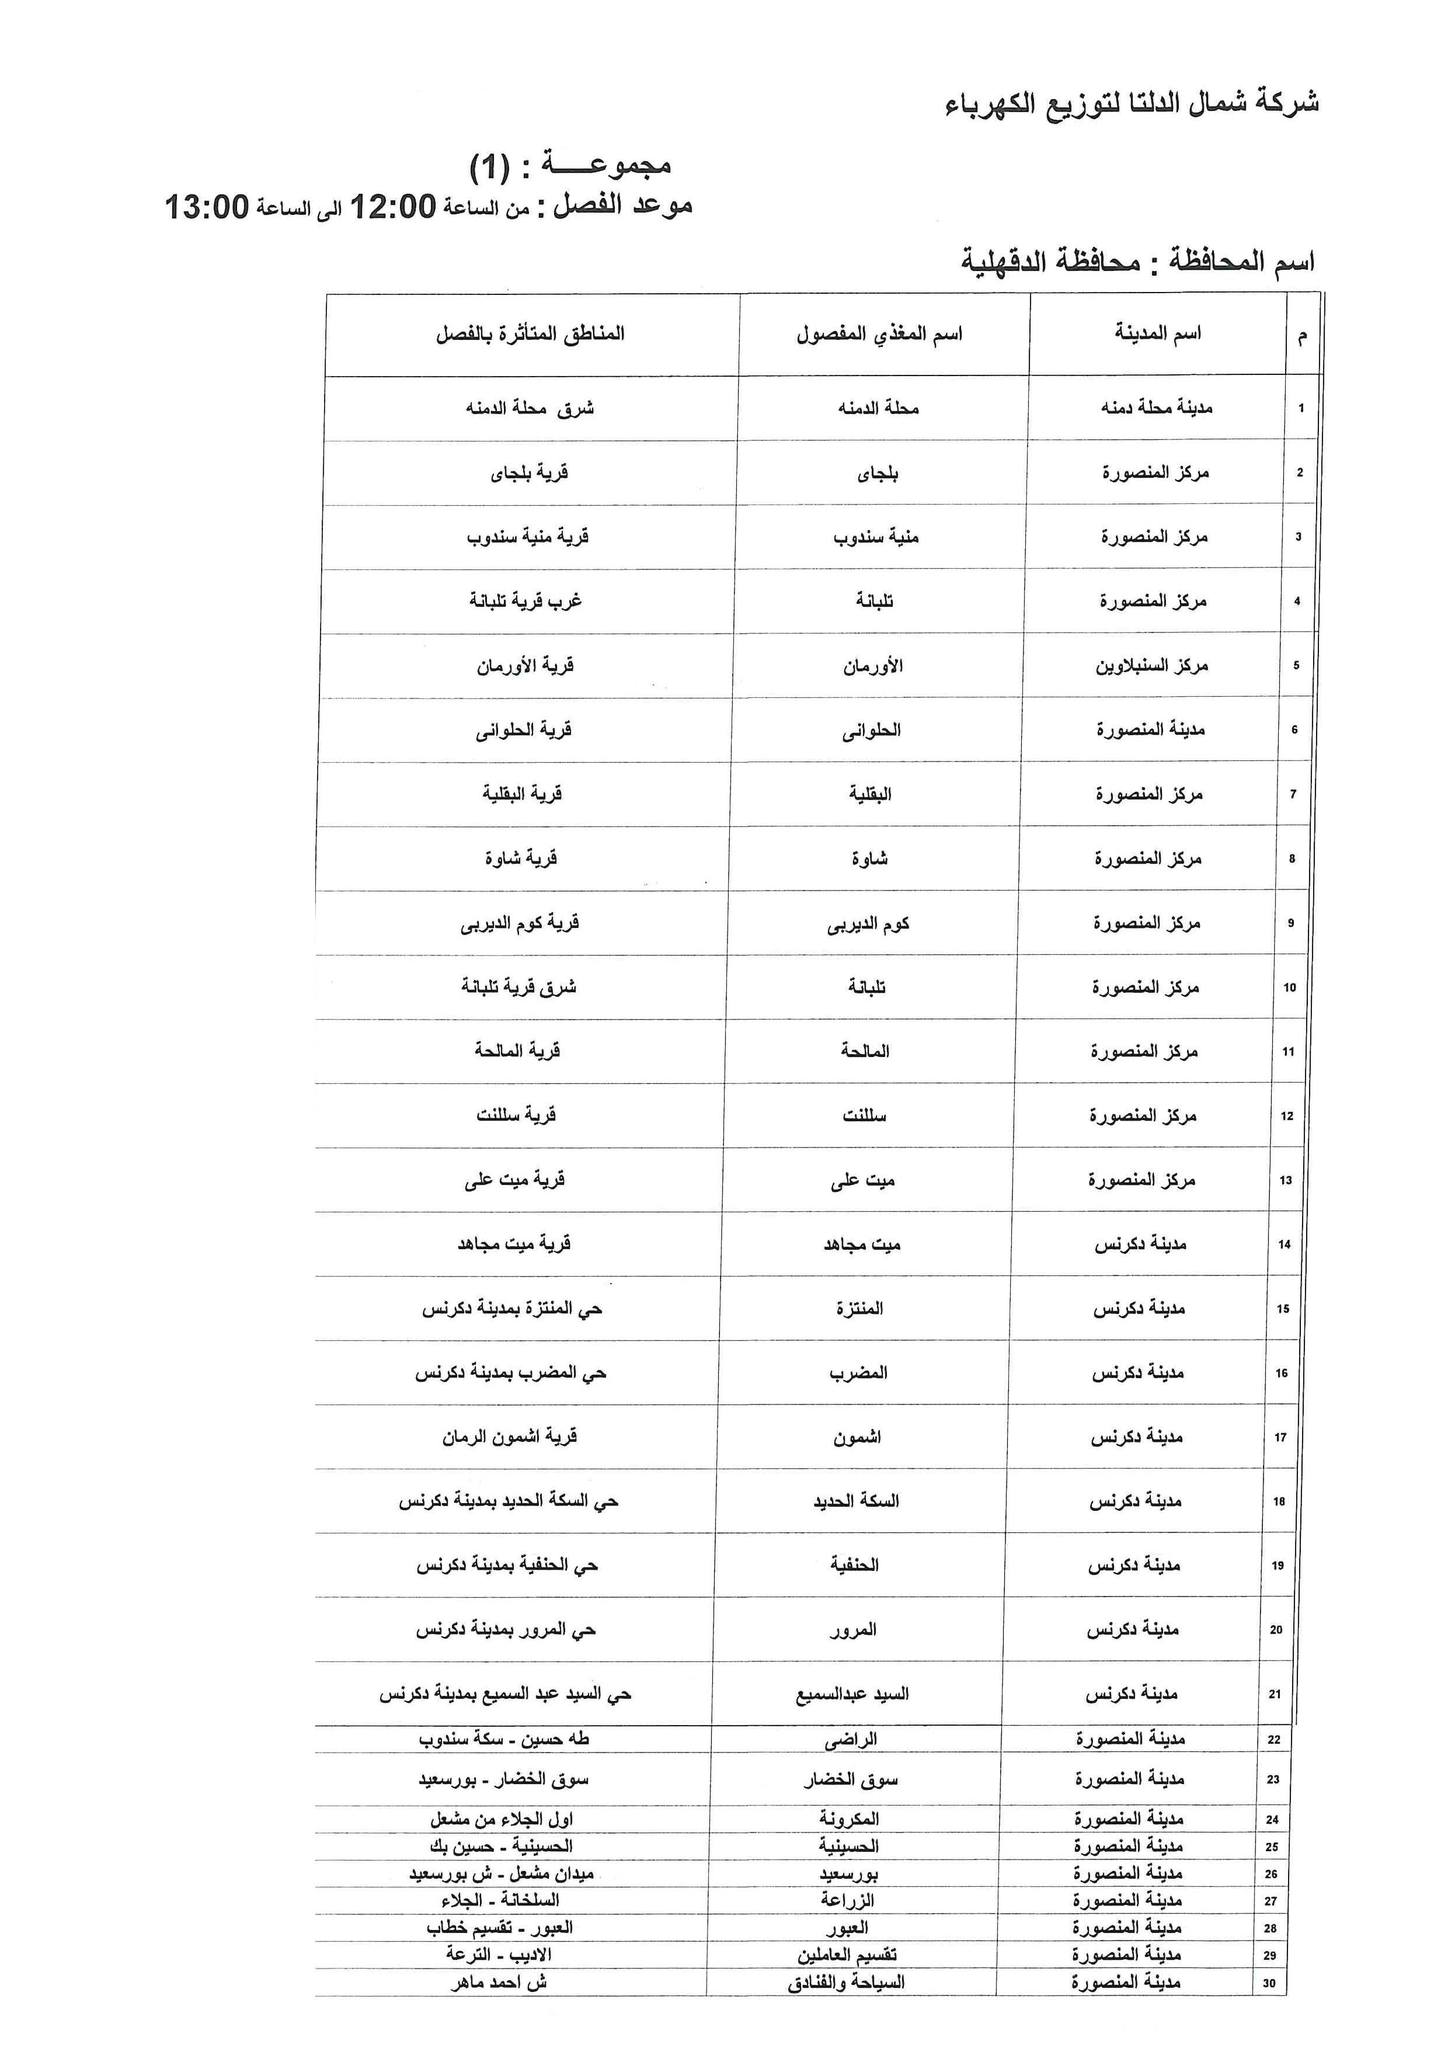 الإعلان عن خطة تخفيف أحمال الكهرباء فى محافظة الدقهلية 1